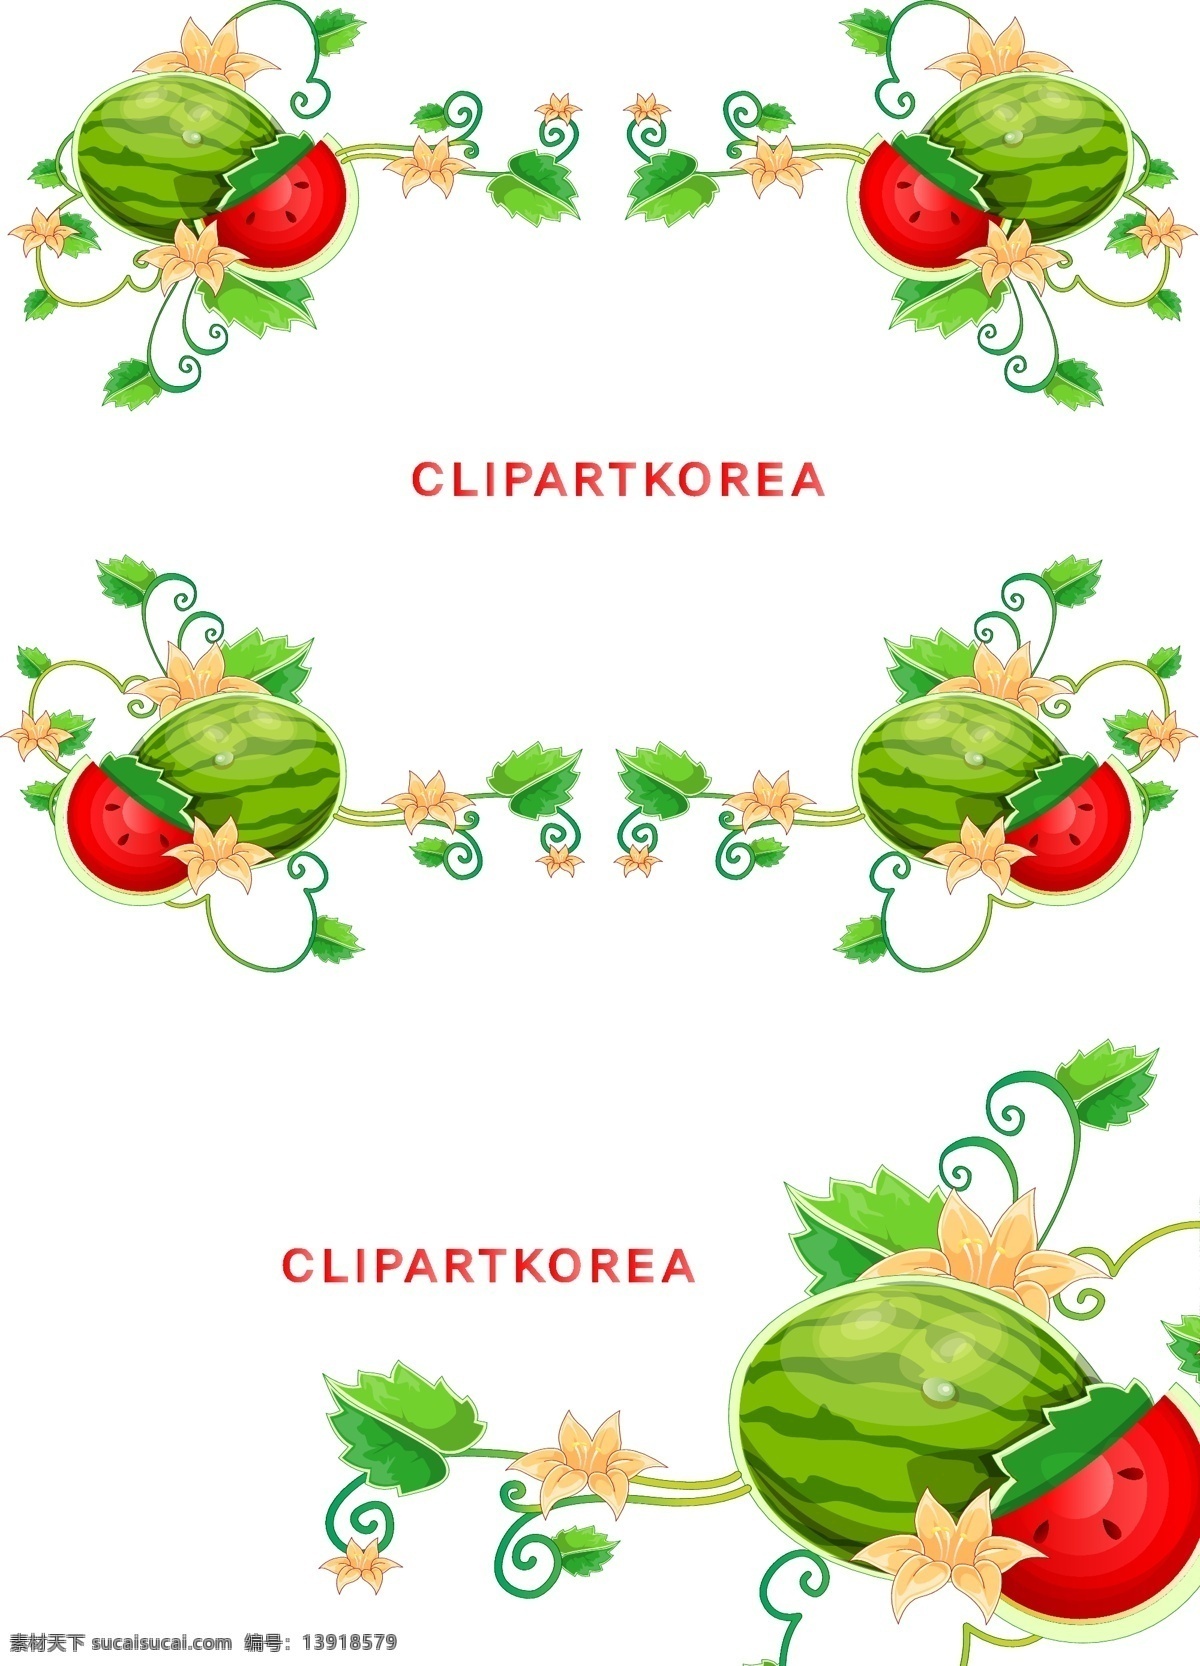 韩国 矢量 花边 ai格式 边框 花朵 花卉 花纹 梦幻 模板 设计稿 矢量素材 西瓜 水果 素材元素 源文件 矢量图